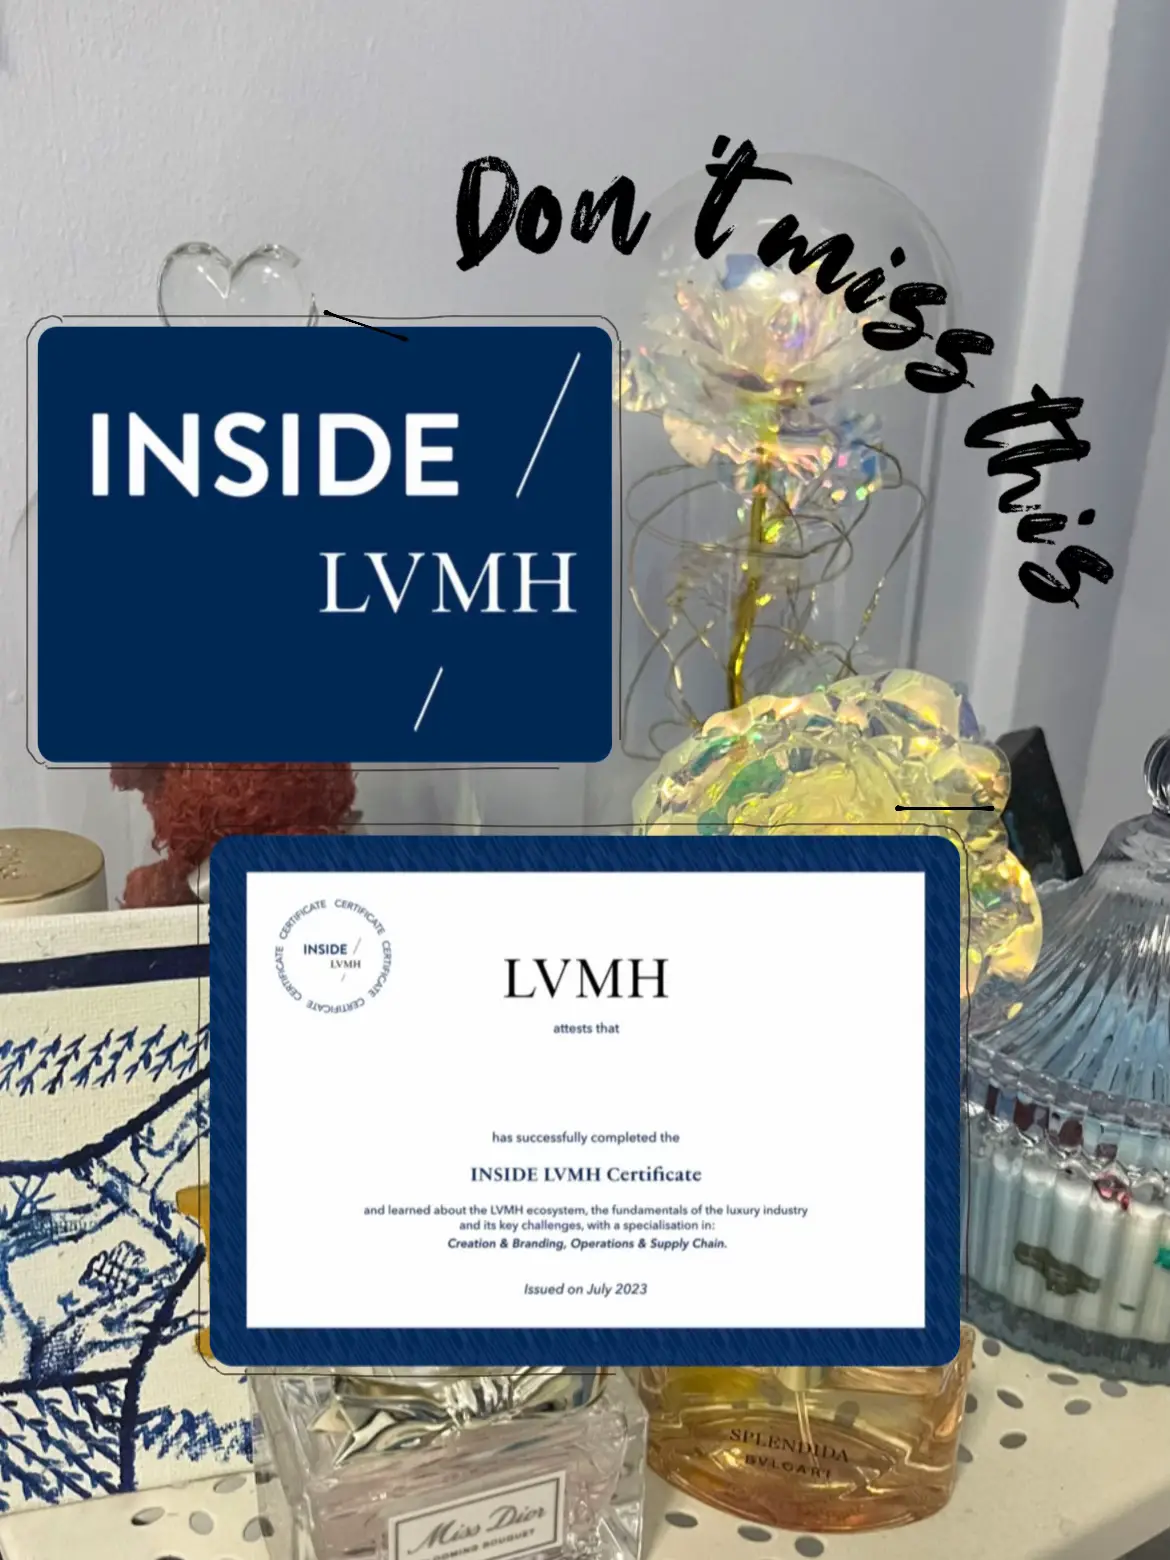 Register NOW to the INSIDE LVMH Certificate - LVMH